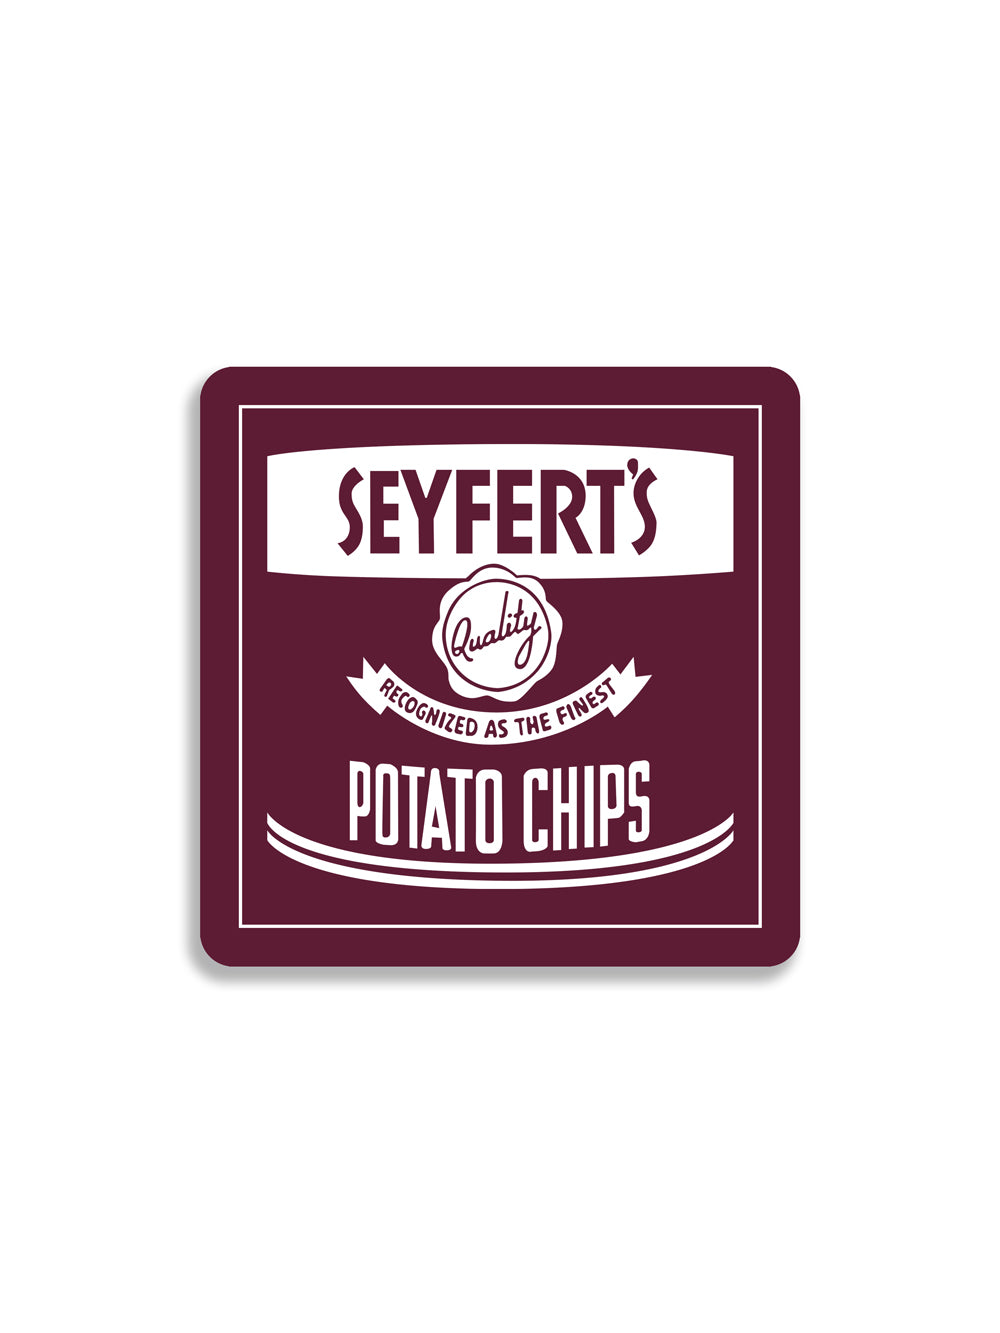 Seyfert's Potato Chips Magnet